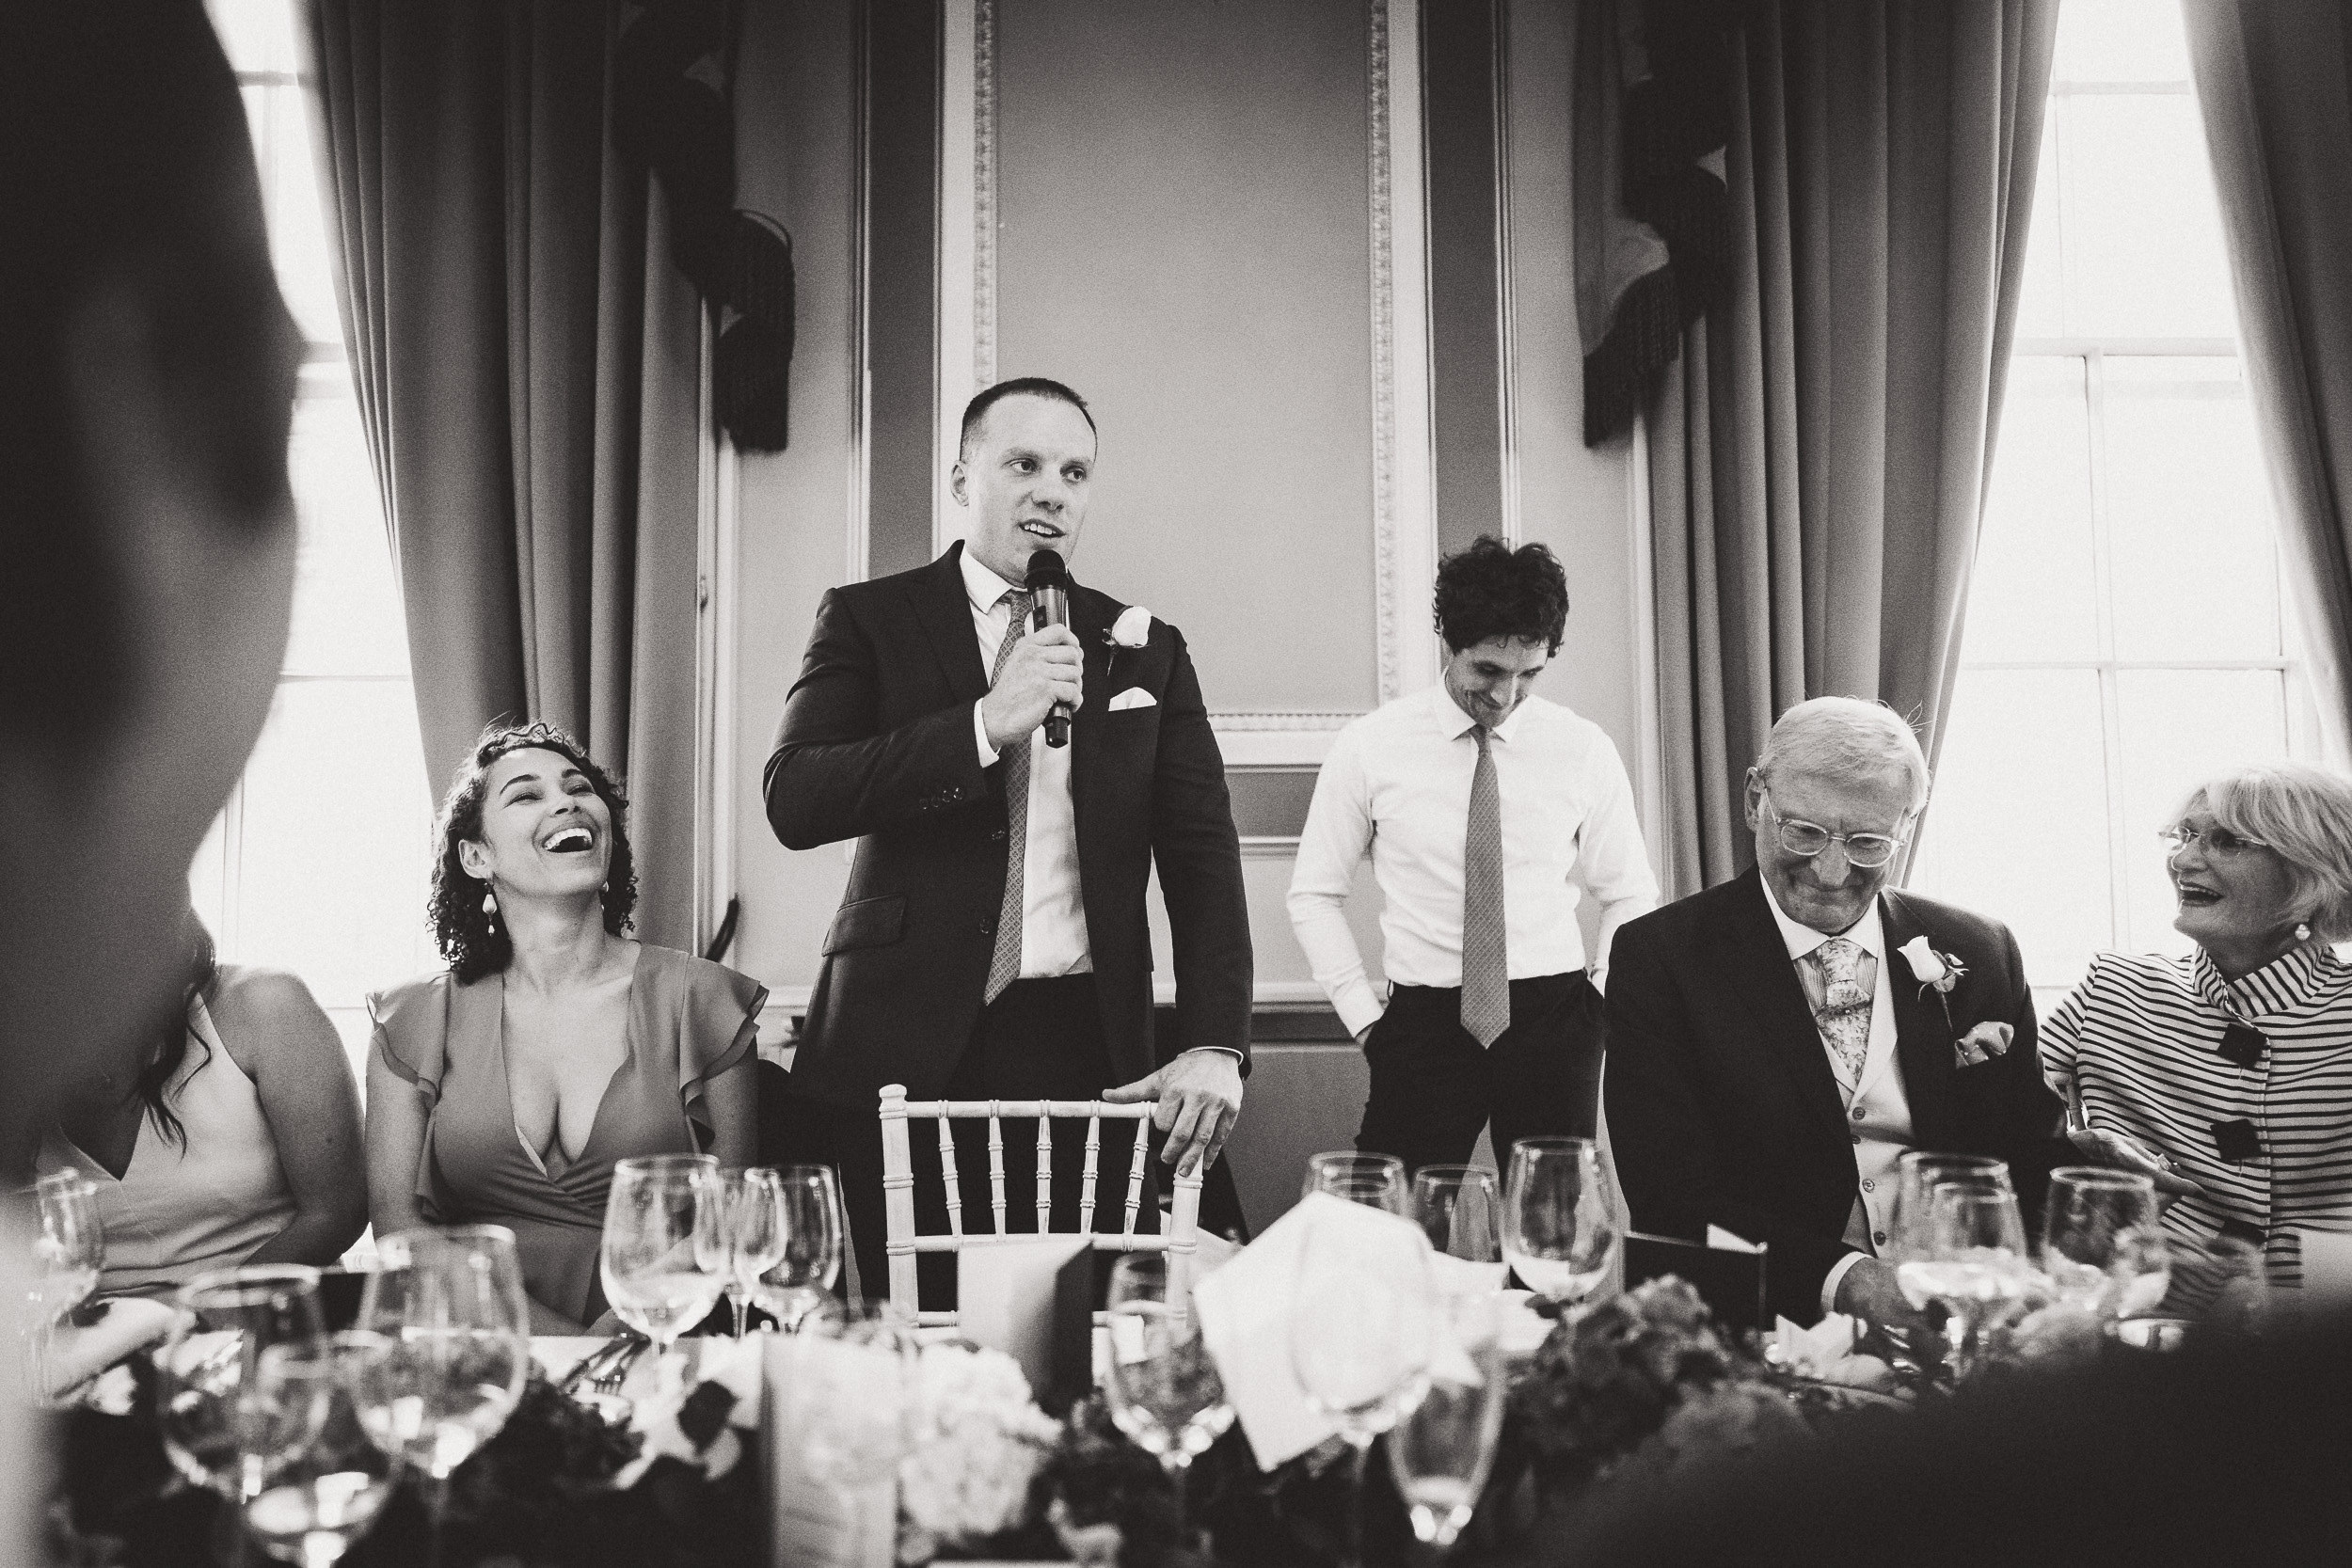 A wedding photo of a groom giving a speech.